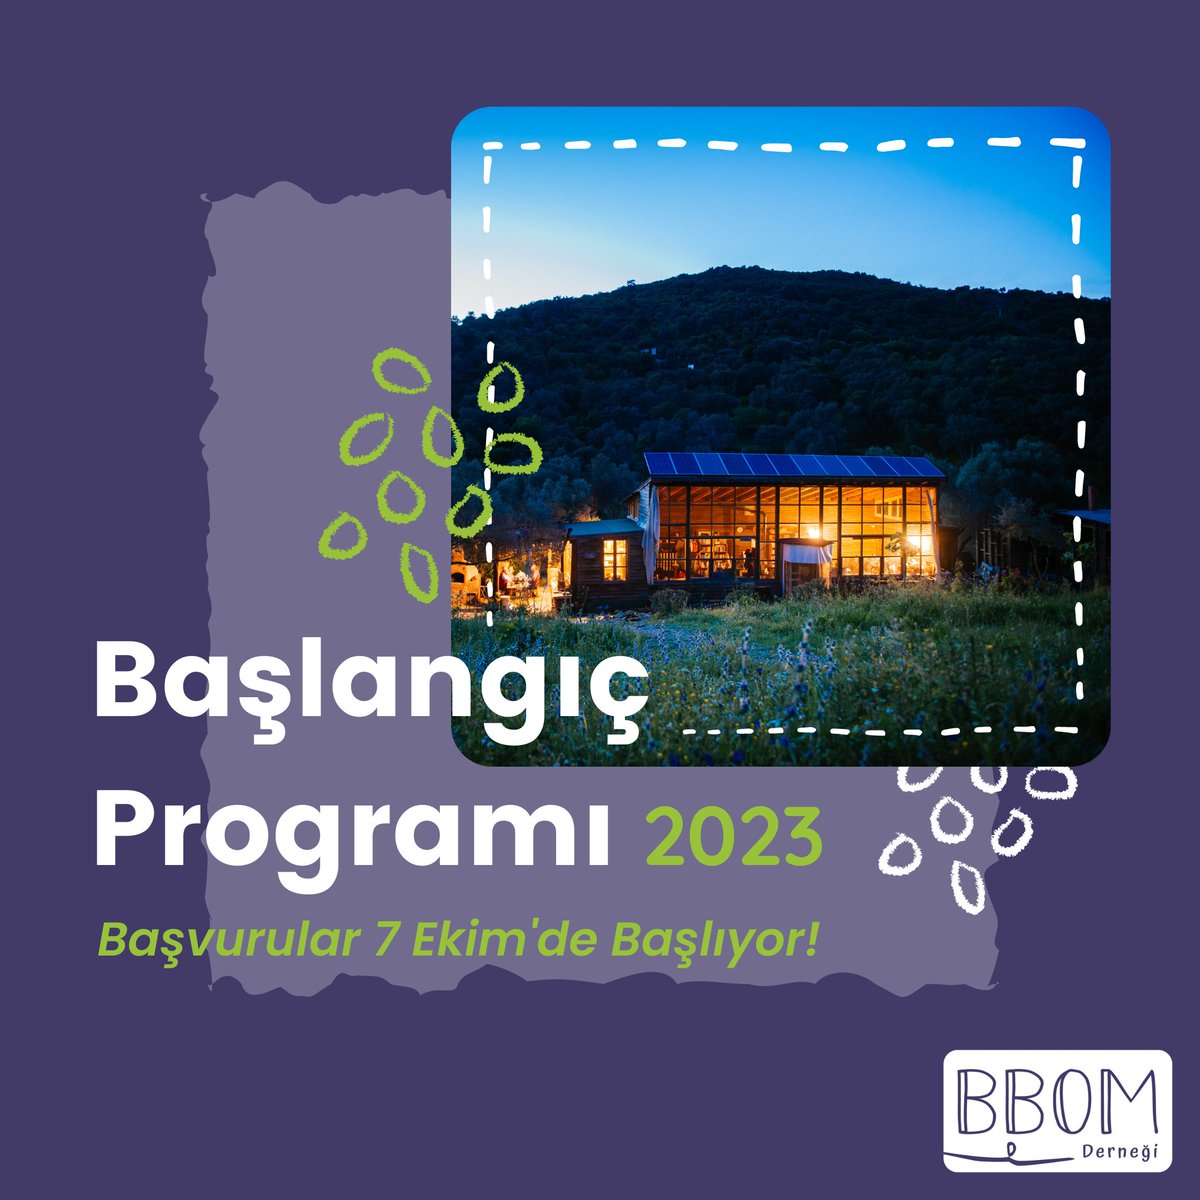 Çok yakında 📣 BBOM Öğretmen Köyü 2023 Başlangıç Programı için başvurular 7 Ekim Cuma günü başlıyor! BBOMÖK topluluğuna katılmaya, katılımcı ve barışçıl öğrenmeye gönüllü olanlar, program detayları ve başvuru formu için takipte kalın! #bbomöğretmenköyü #BaşlangıçProgramı2023